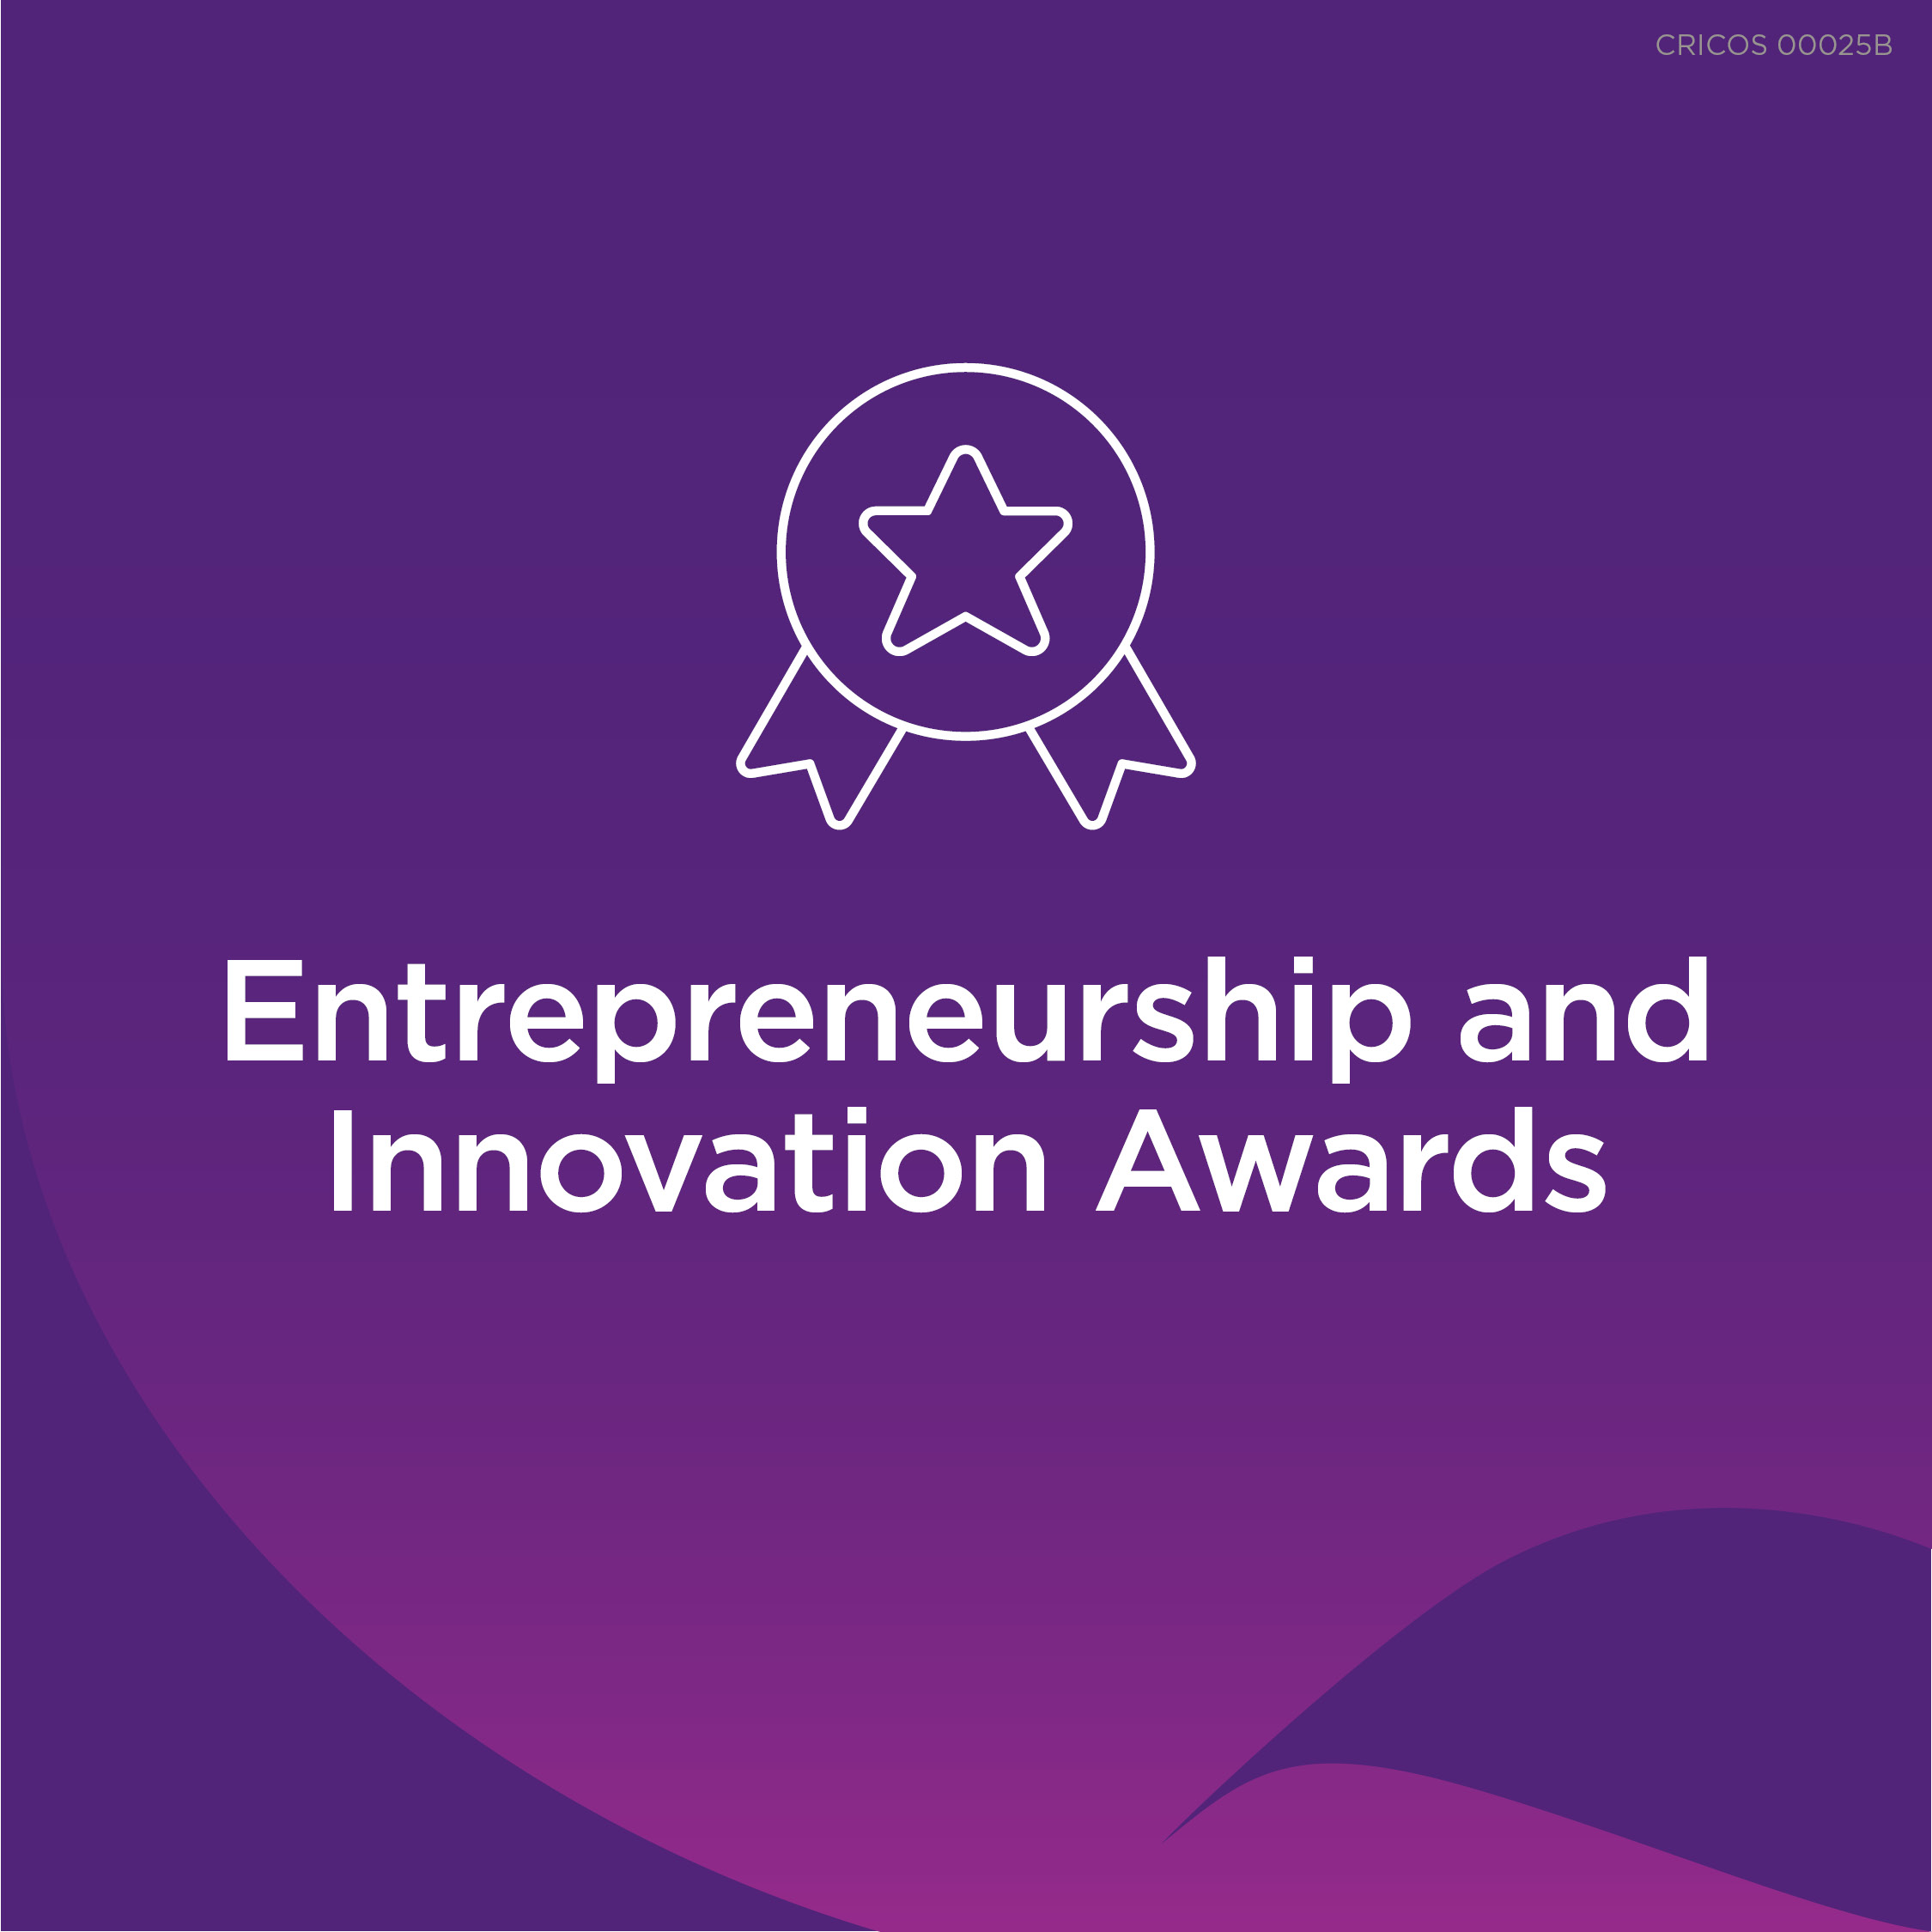 Entrepreneurship and innovation awards